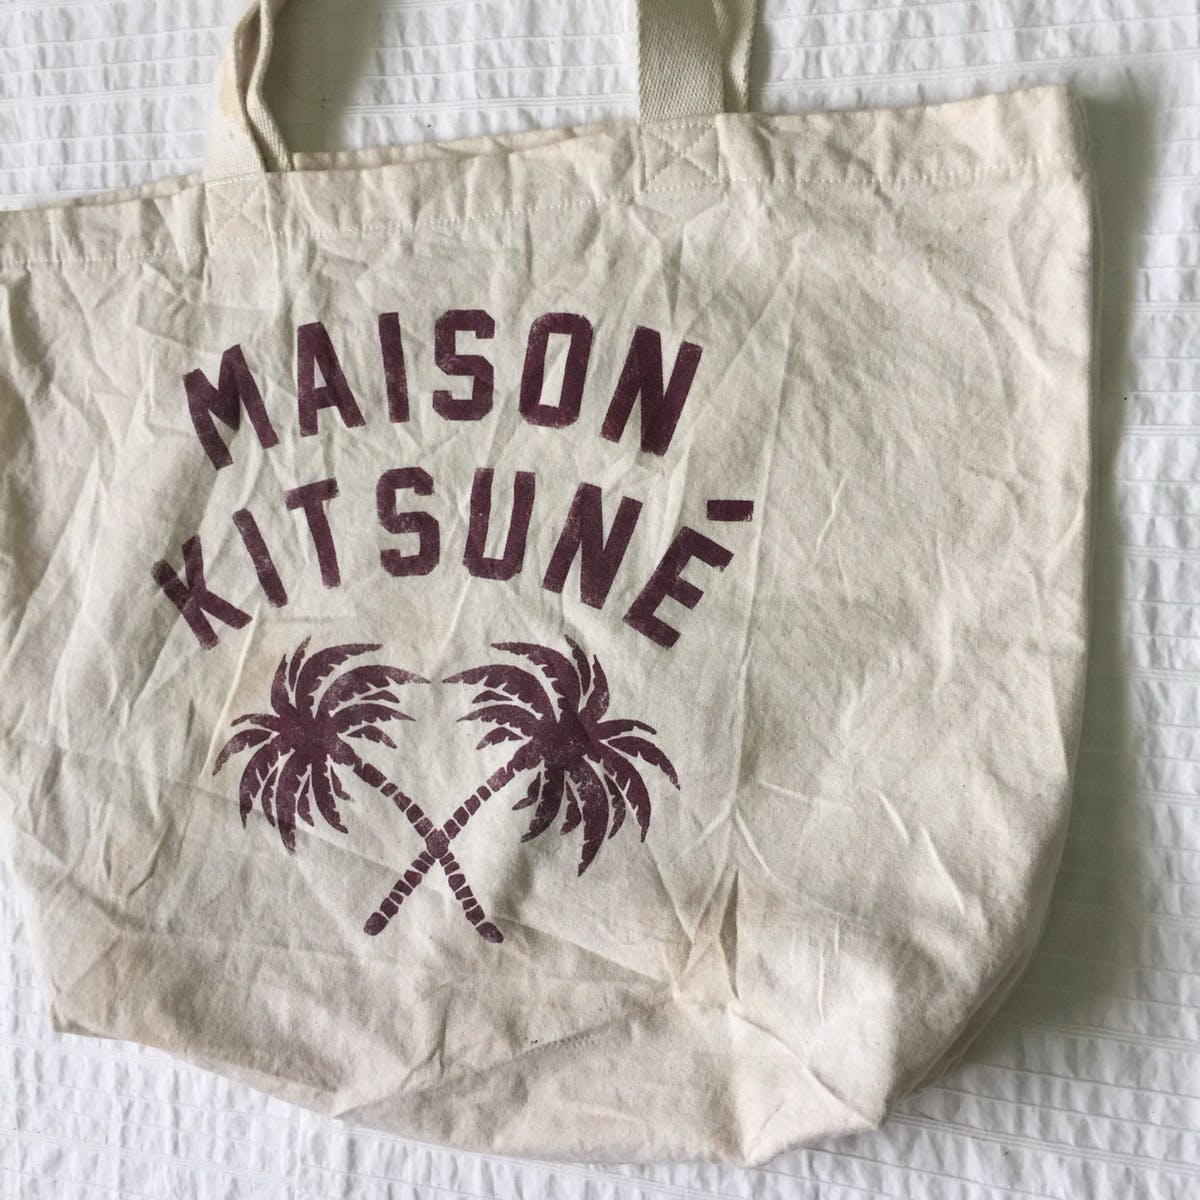 Maison kitsune tote bag - 2